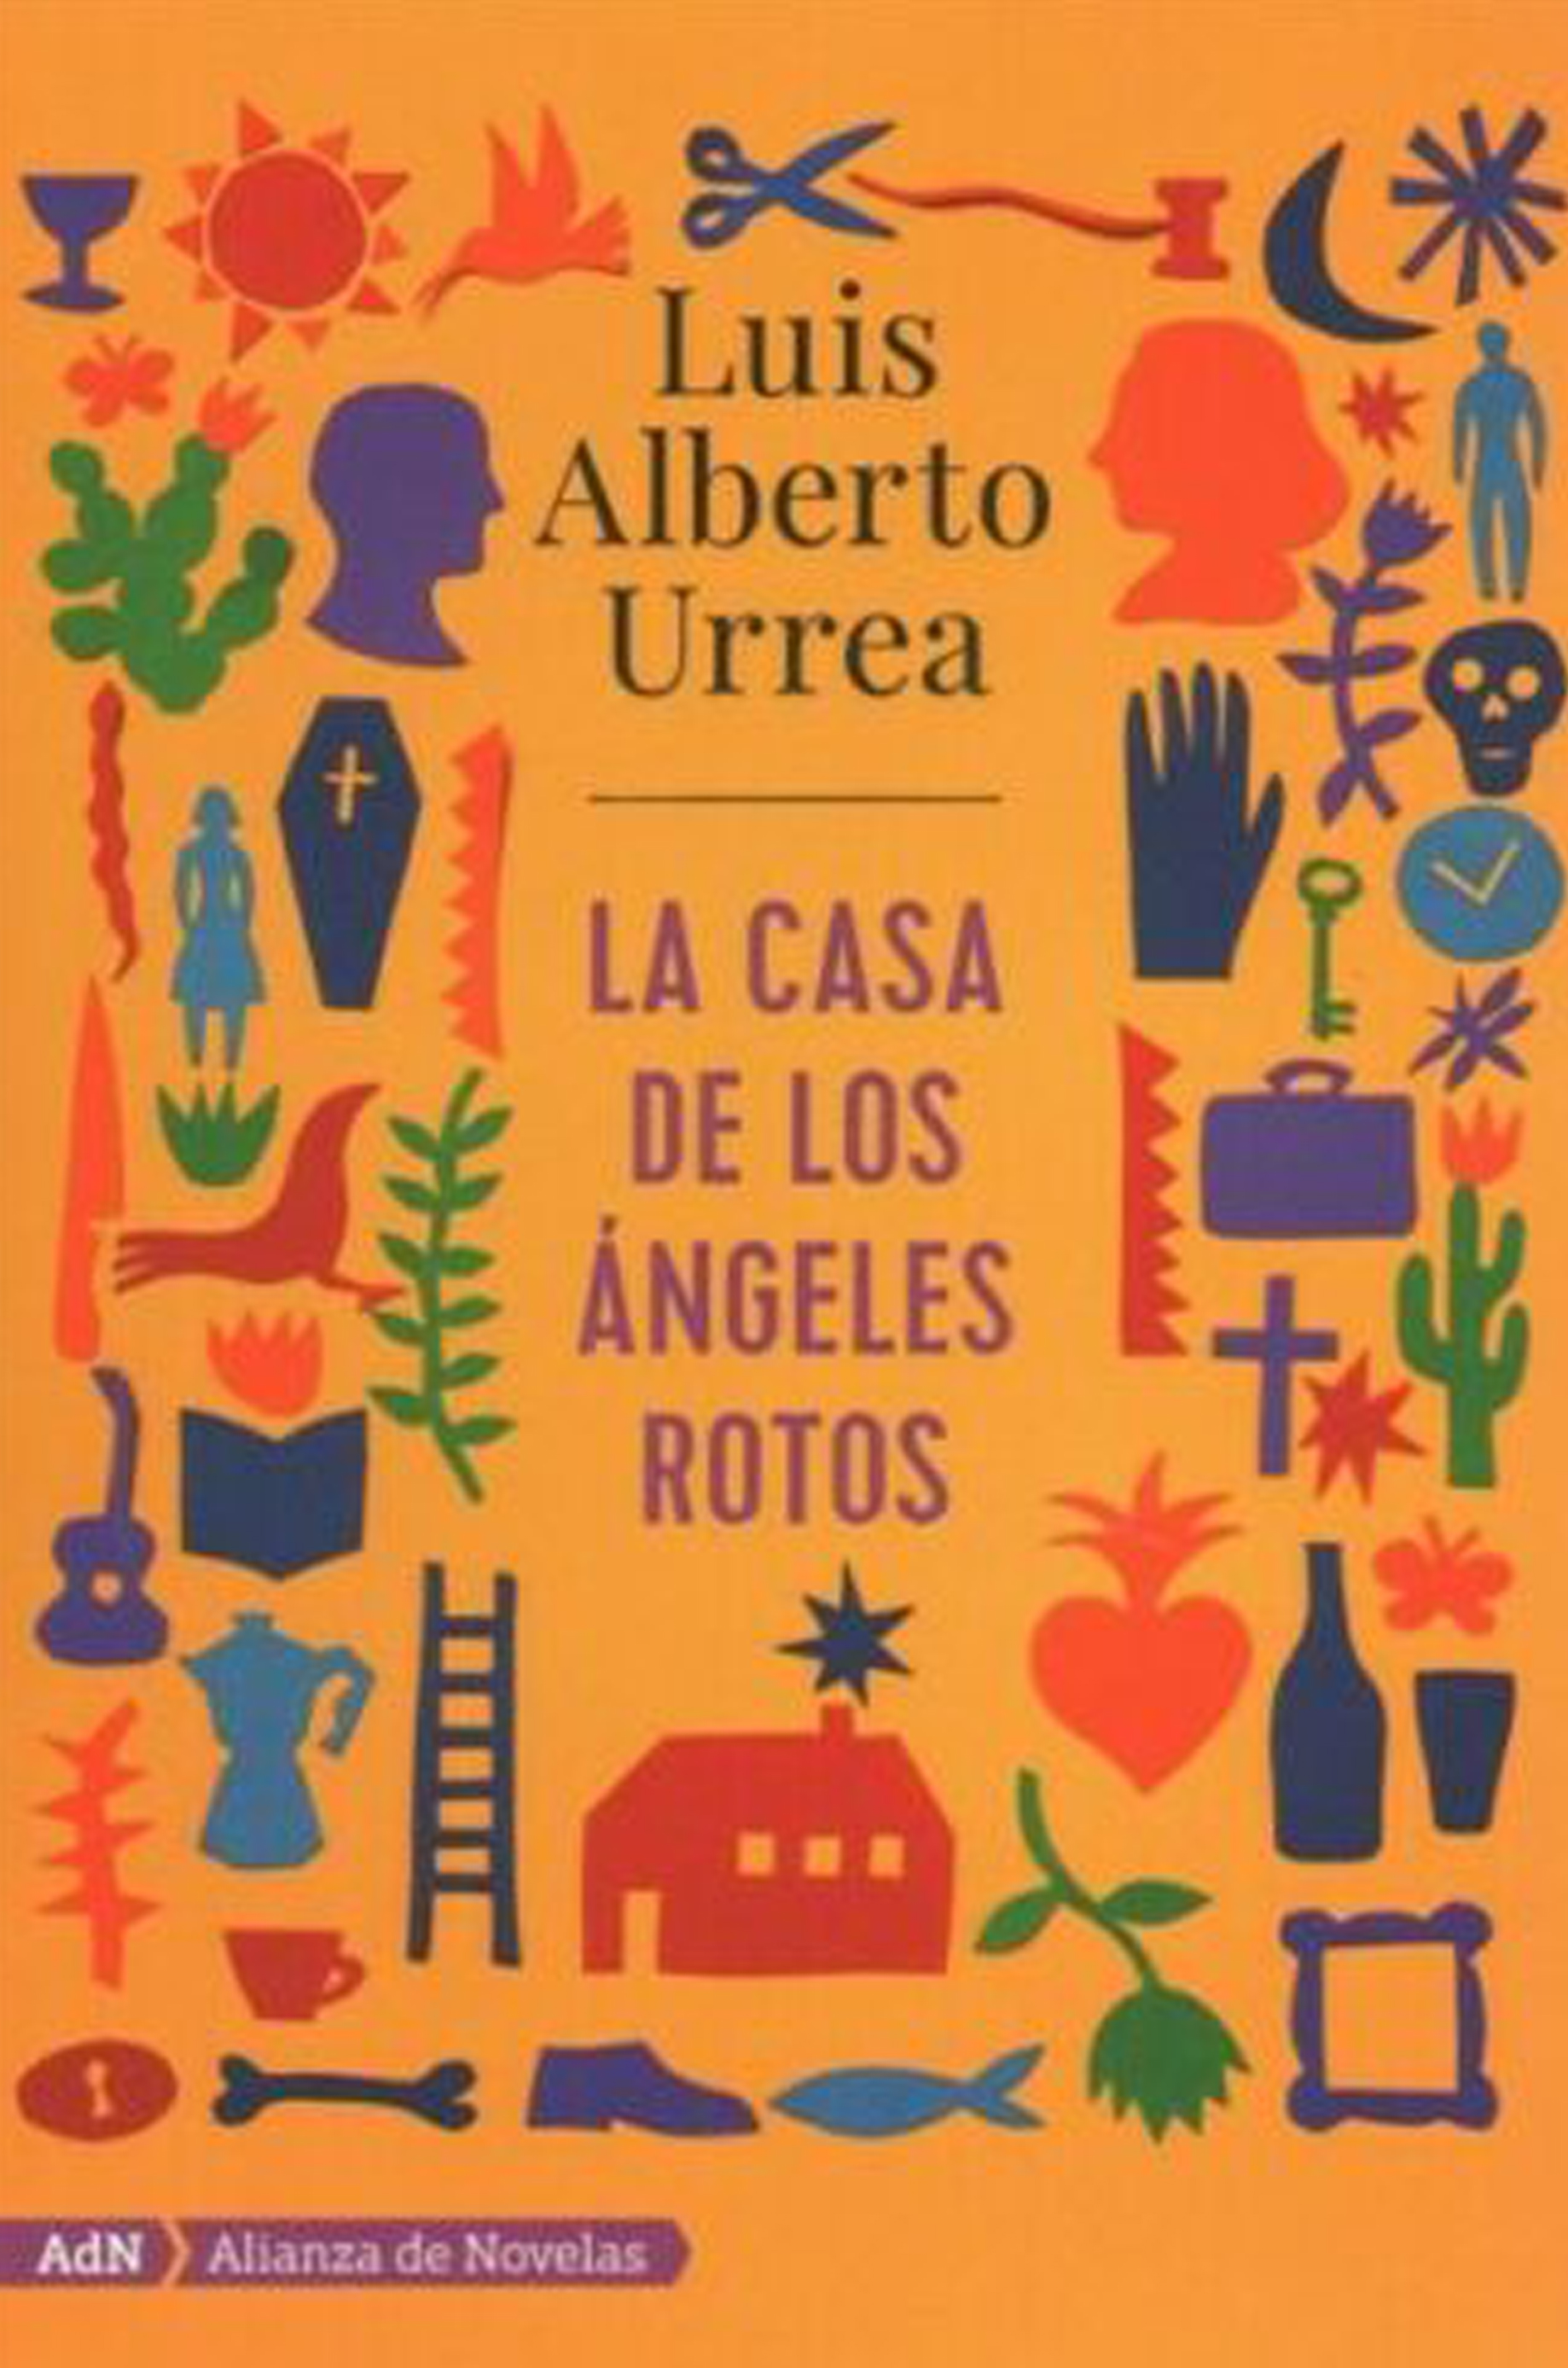 'The House of Broken Angels is Luis Alberto Urrea